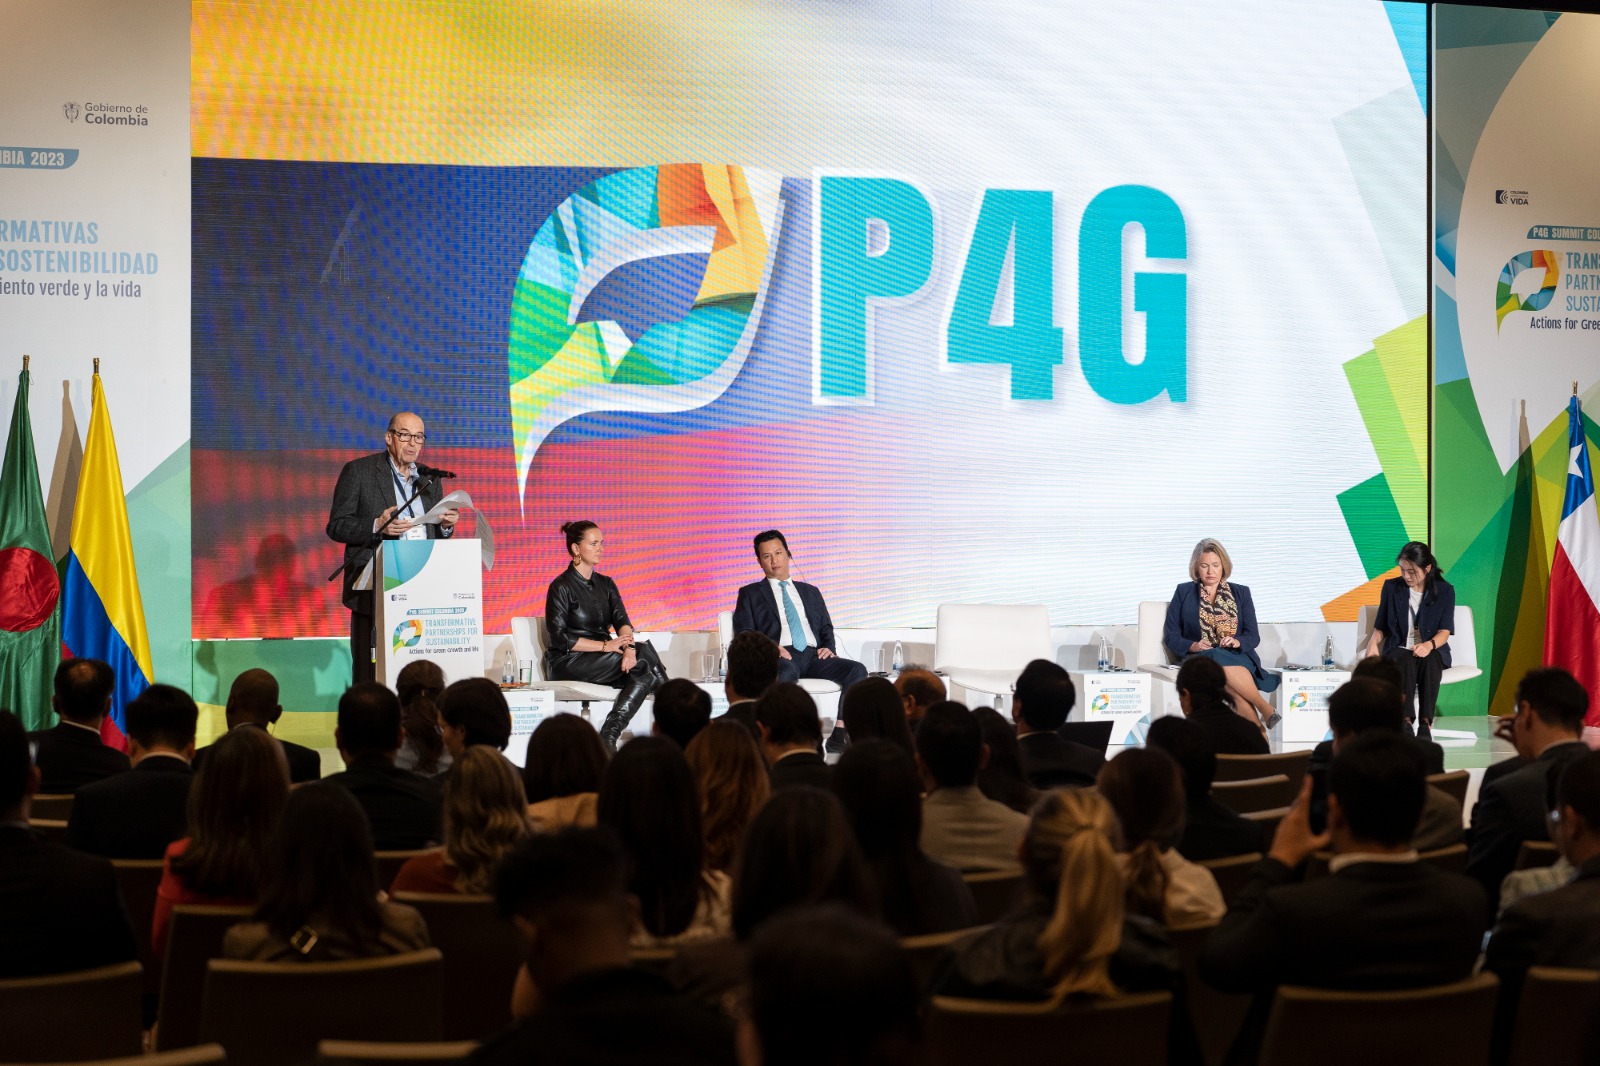 En la clausura de la Cumbre P4G, Canciller Álvaro Leyva invitó a definir acciones concretas y alcanzar compromisos tangibles en favor del Desarrollo Sostenible de la humanidad